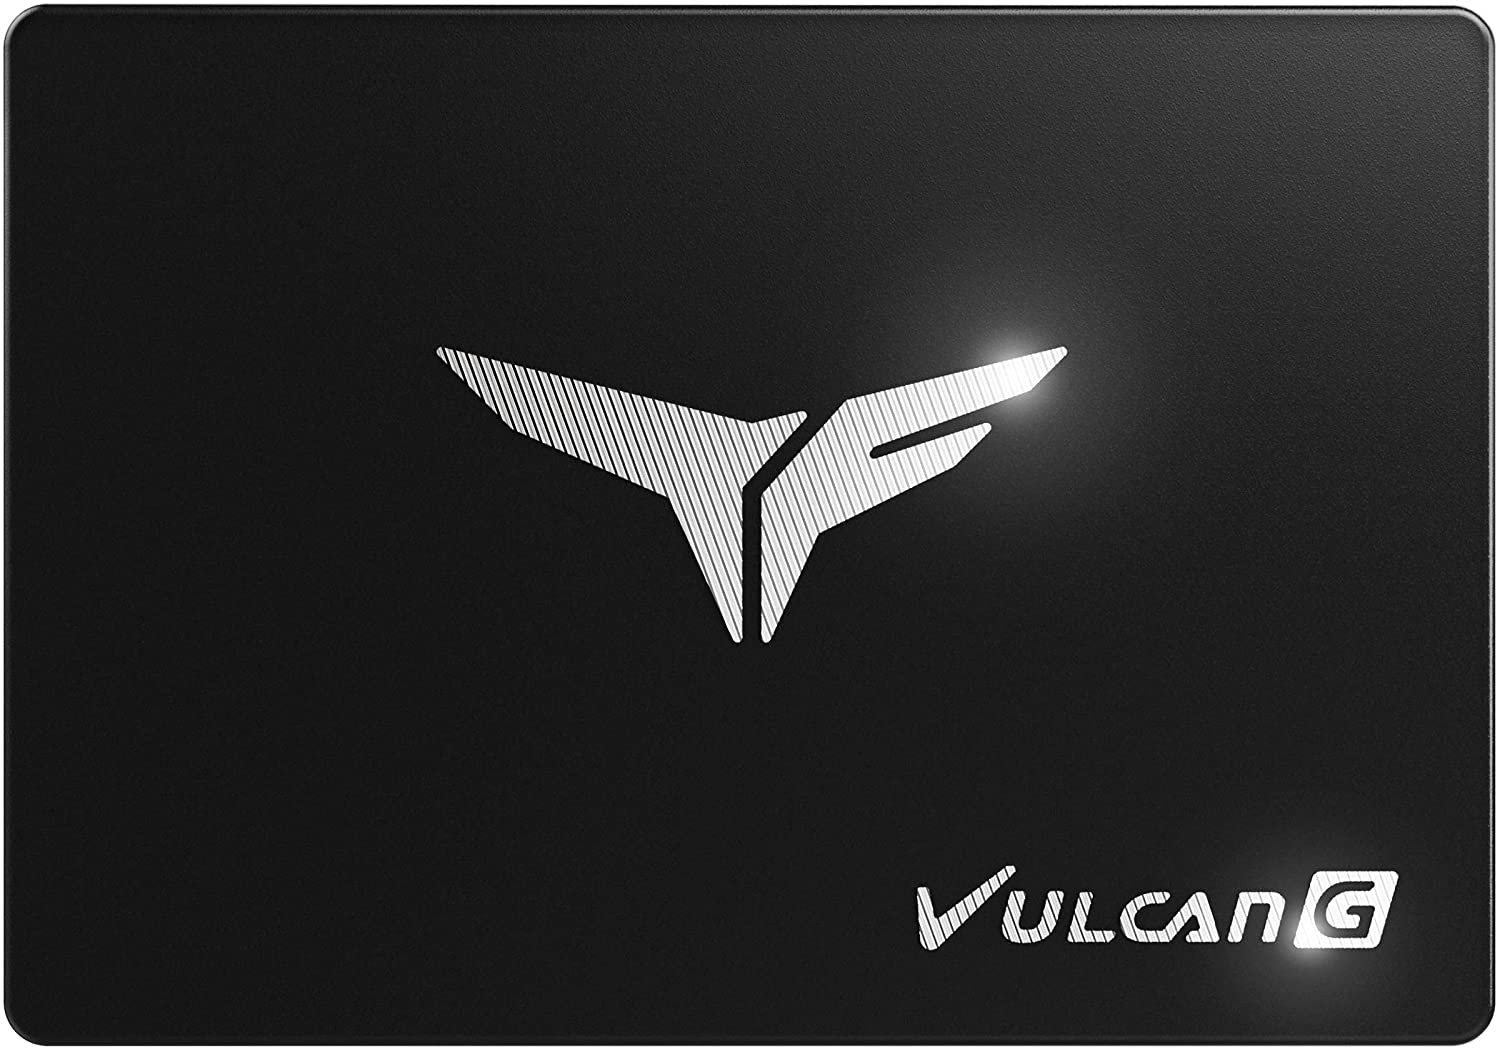 Disque SSD Gamer Vulcan G T-Force Noir